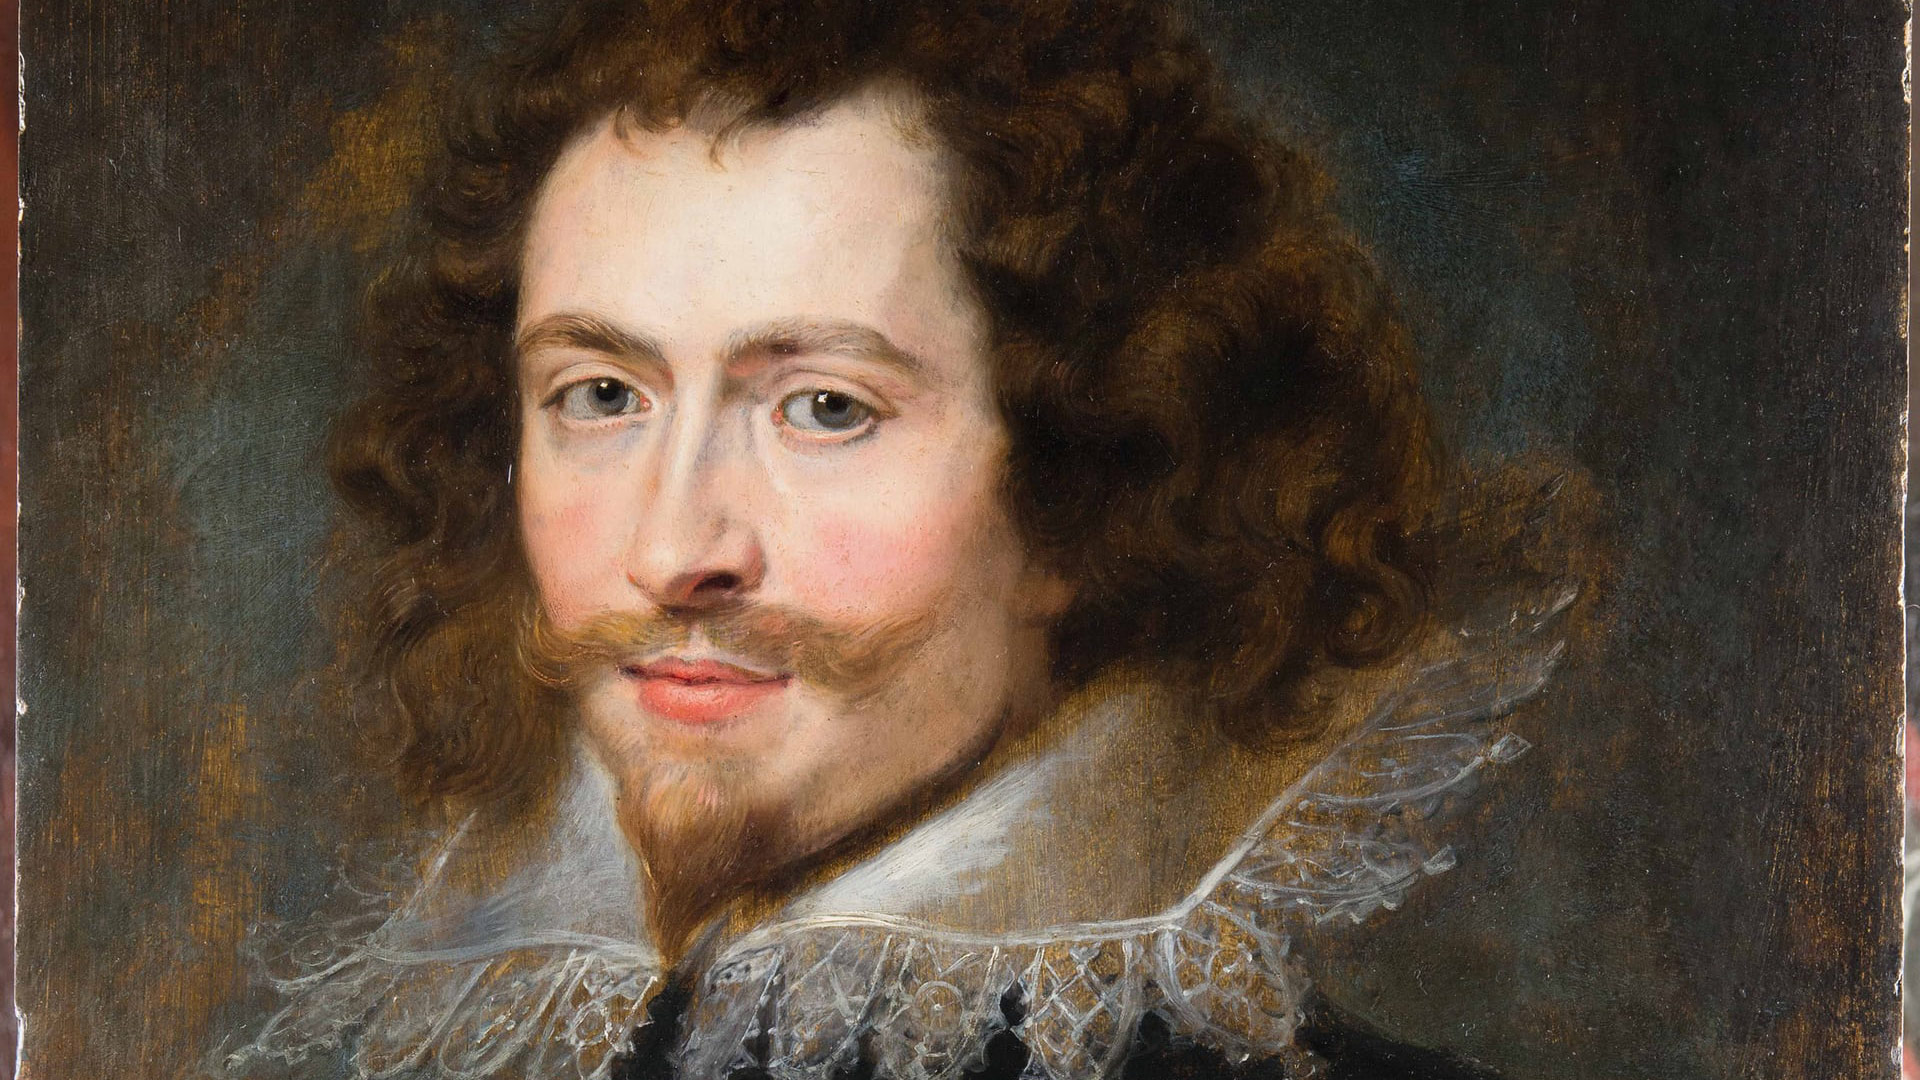 Reaparece un retrato perdido de Rubens en Glasgow tras casi 400 años